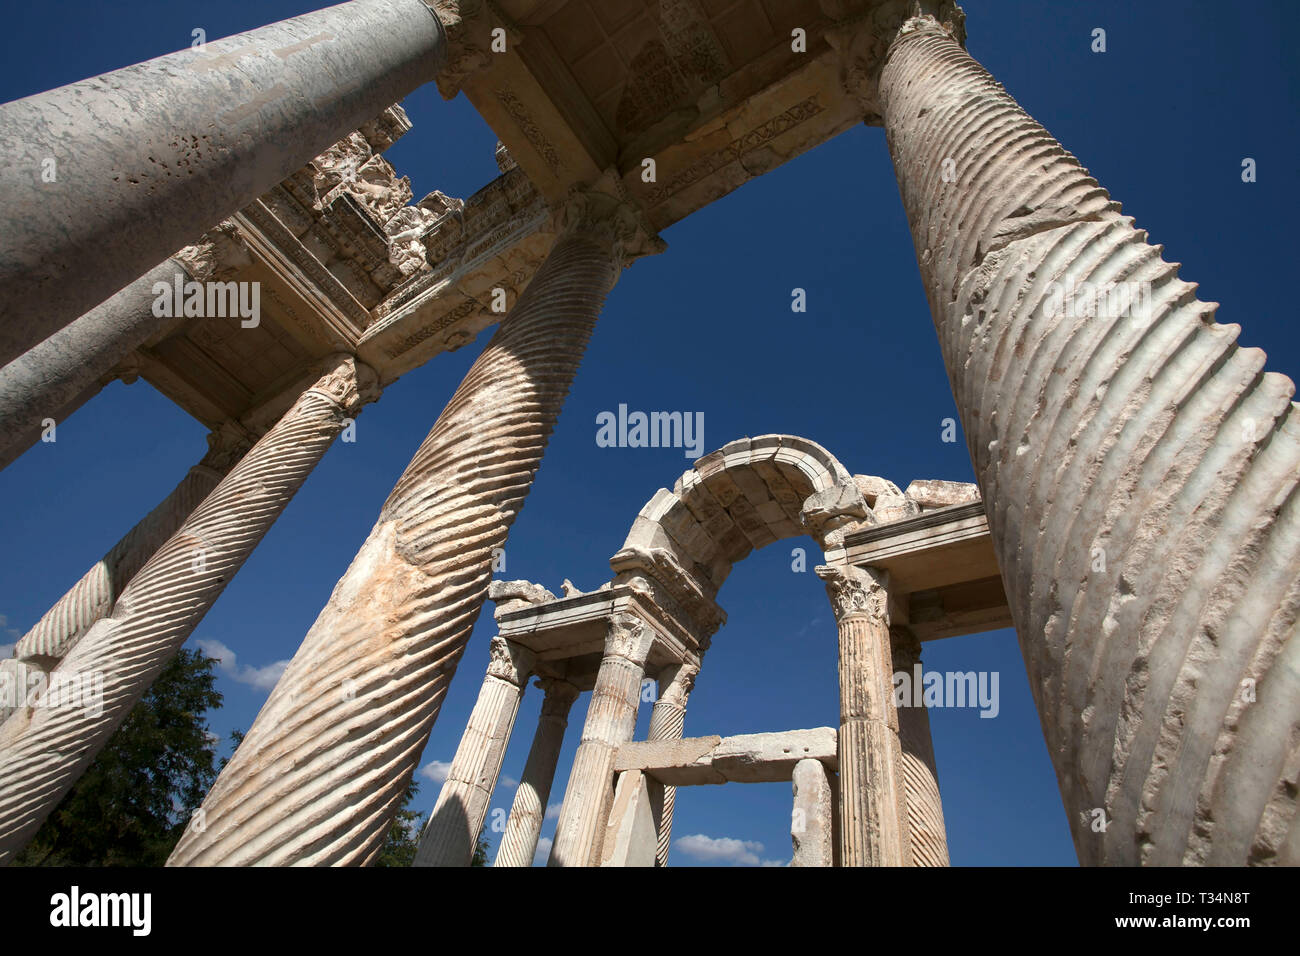 Alte Ruinen, Ephesus, Izmir, Türkei Stockfoto